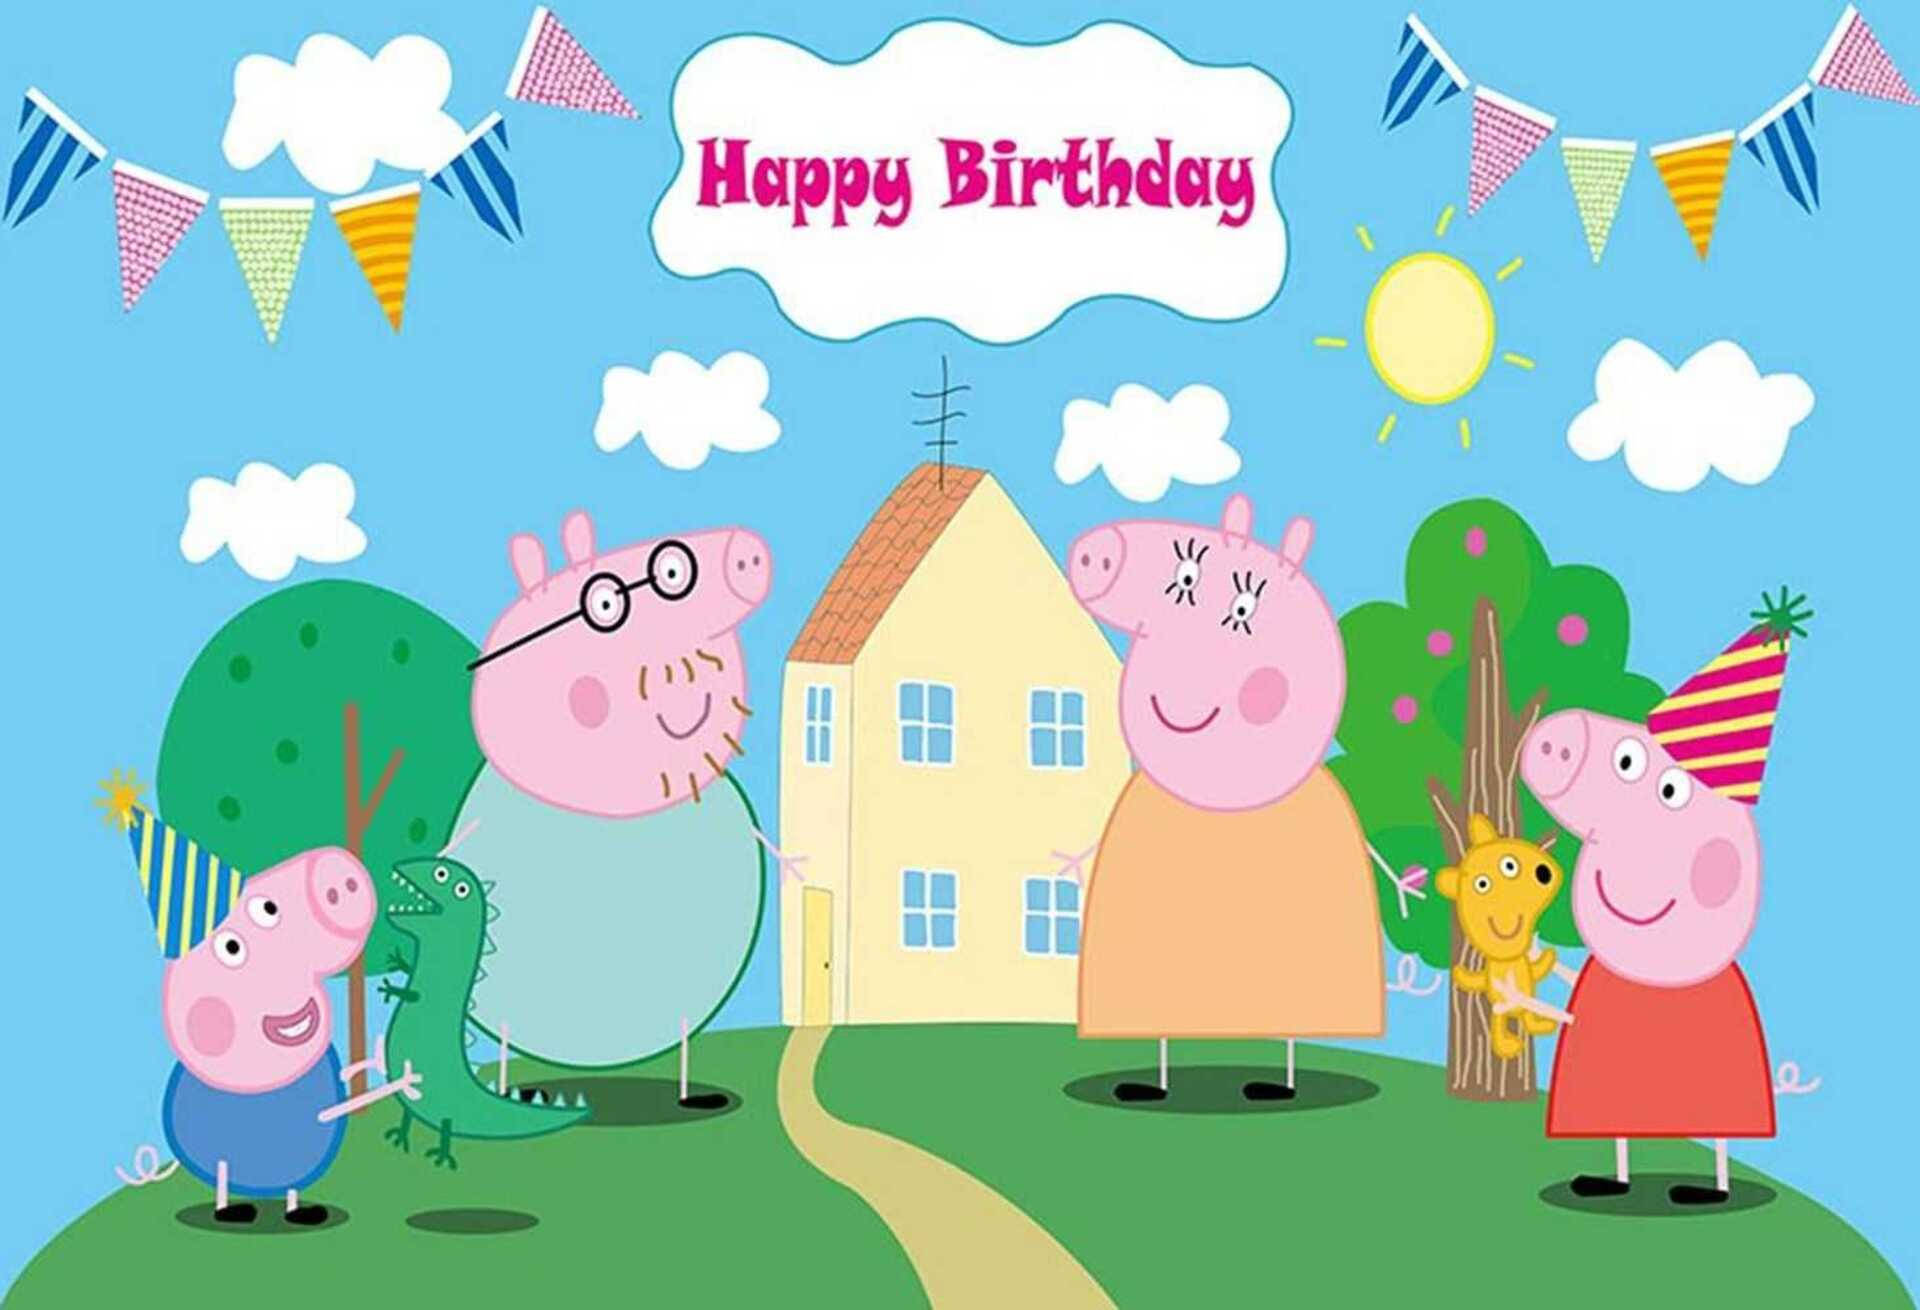 En glædelig fødselsdag hilsen fra Peppa Pig's hus Wallpaper